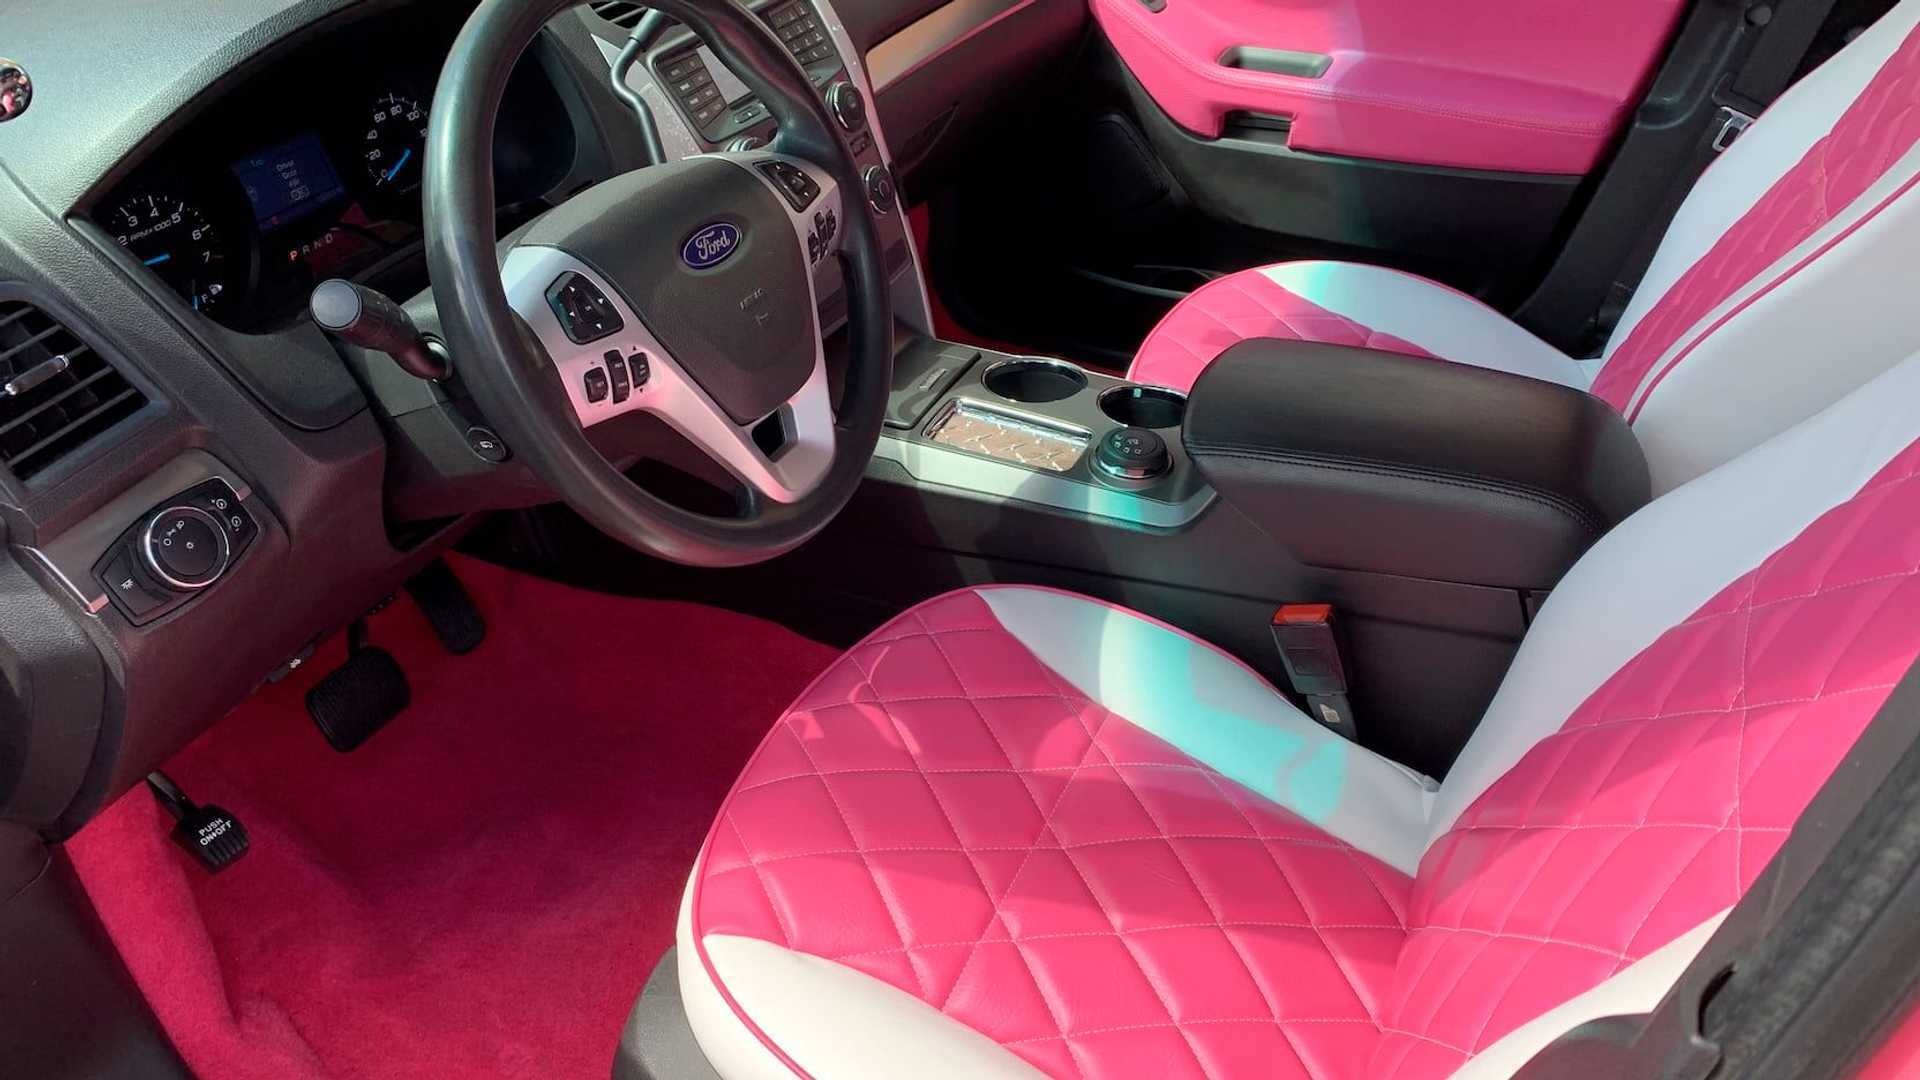 Салон розового "полицейского" авто